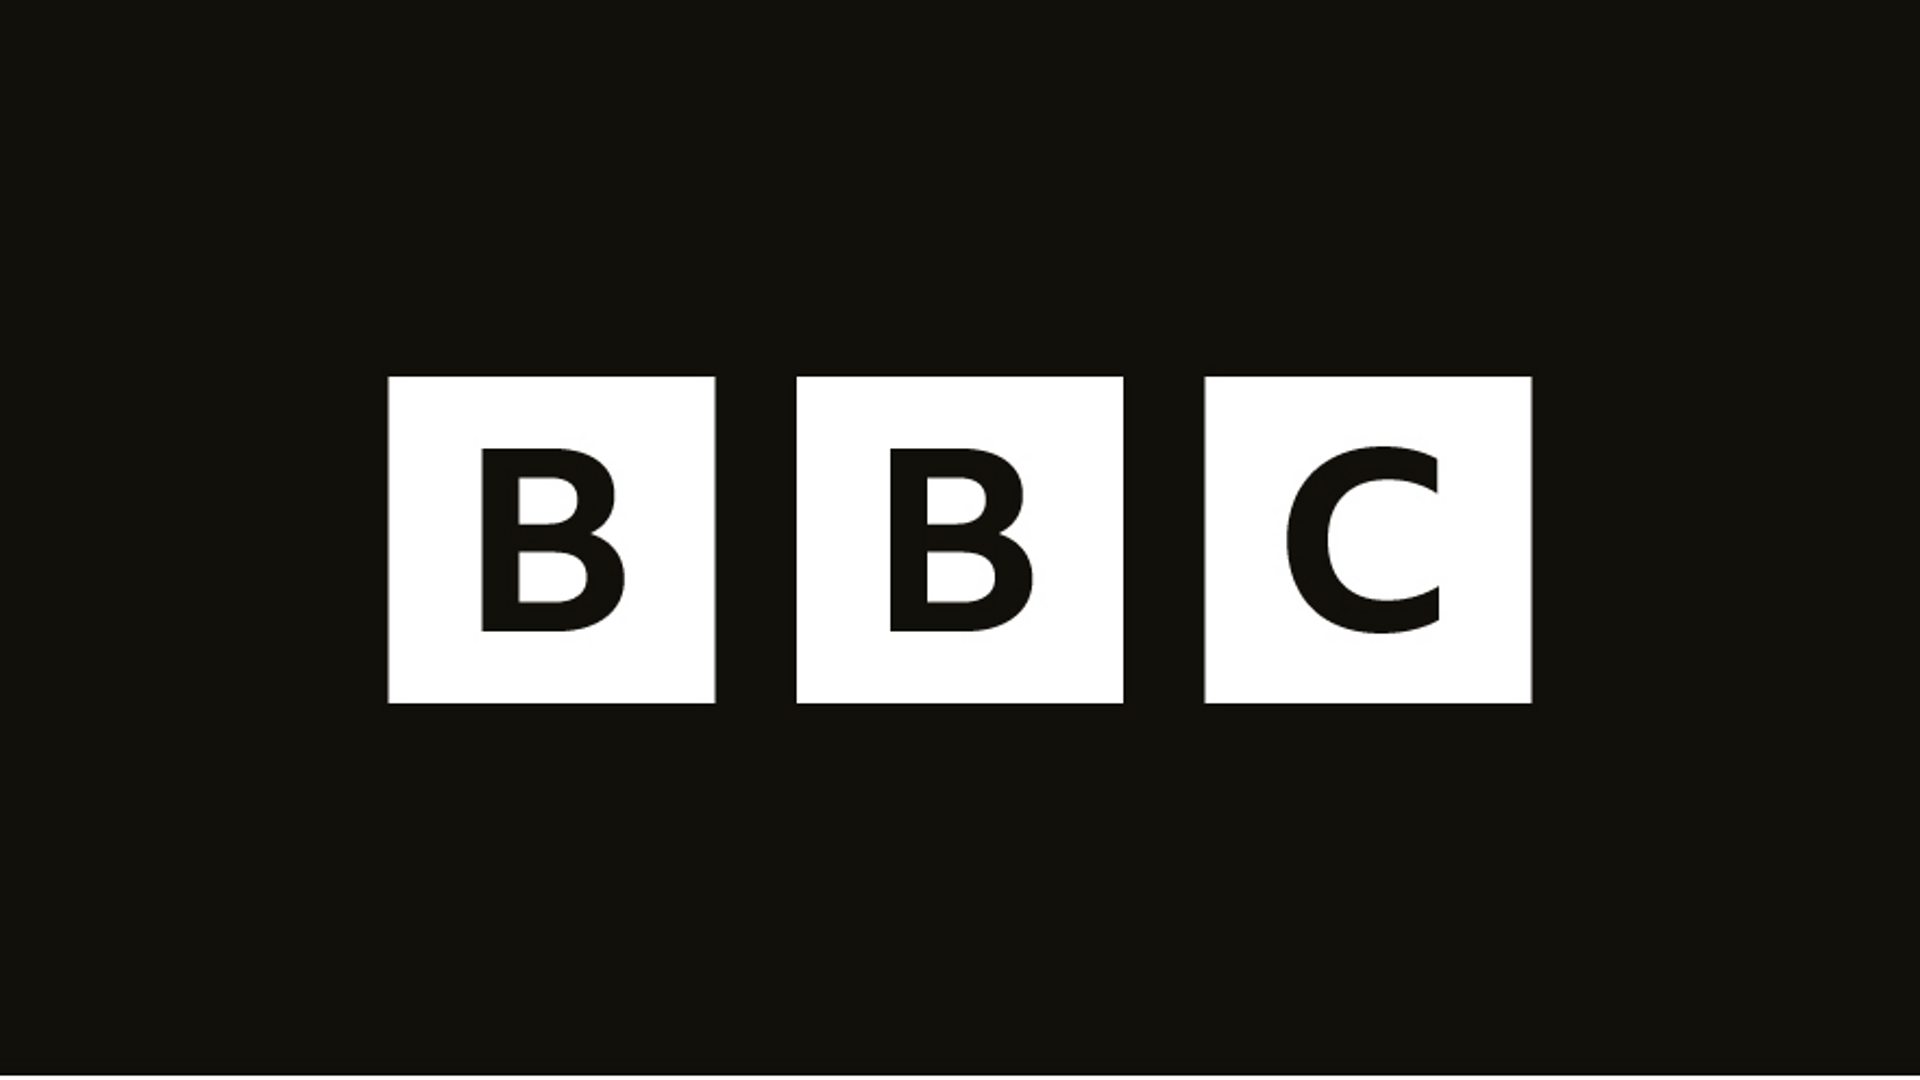 Πόλεμος στην Ουκρανία: Η Μόσχα κλείνει το ρωσική υπηρεσία του BBC